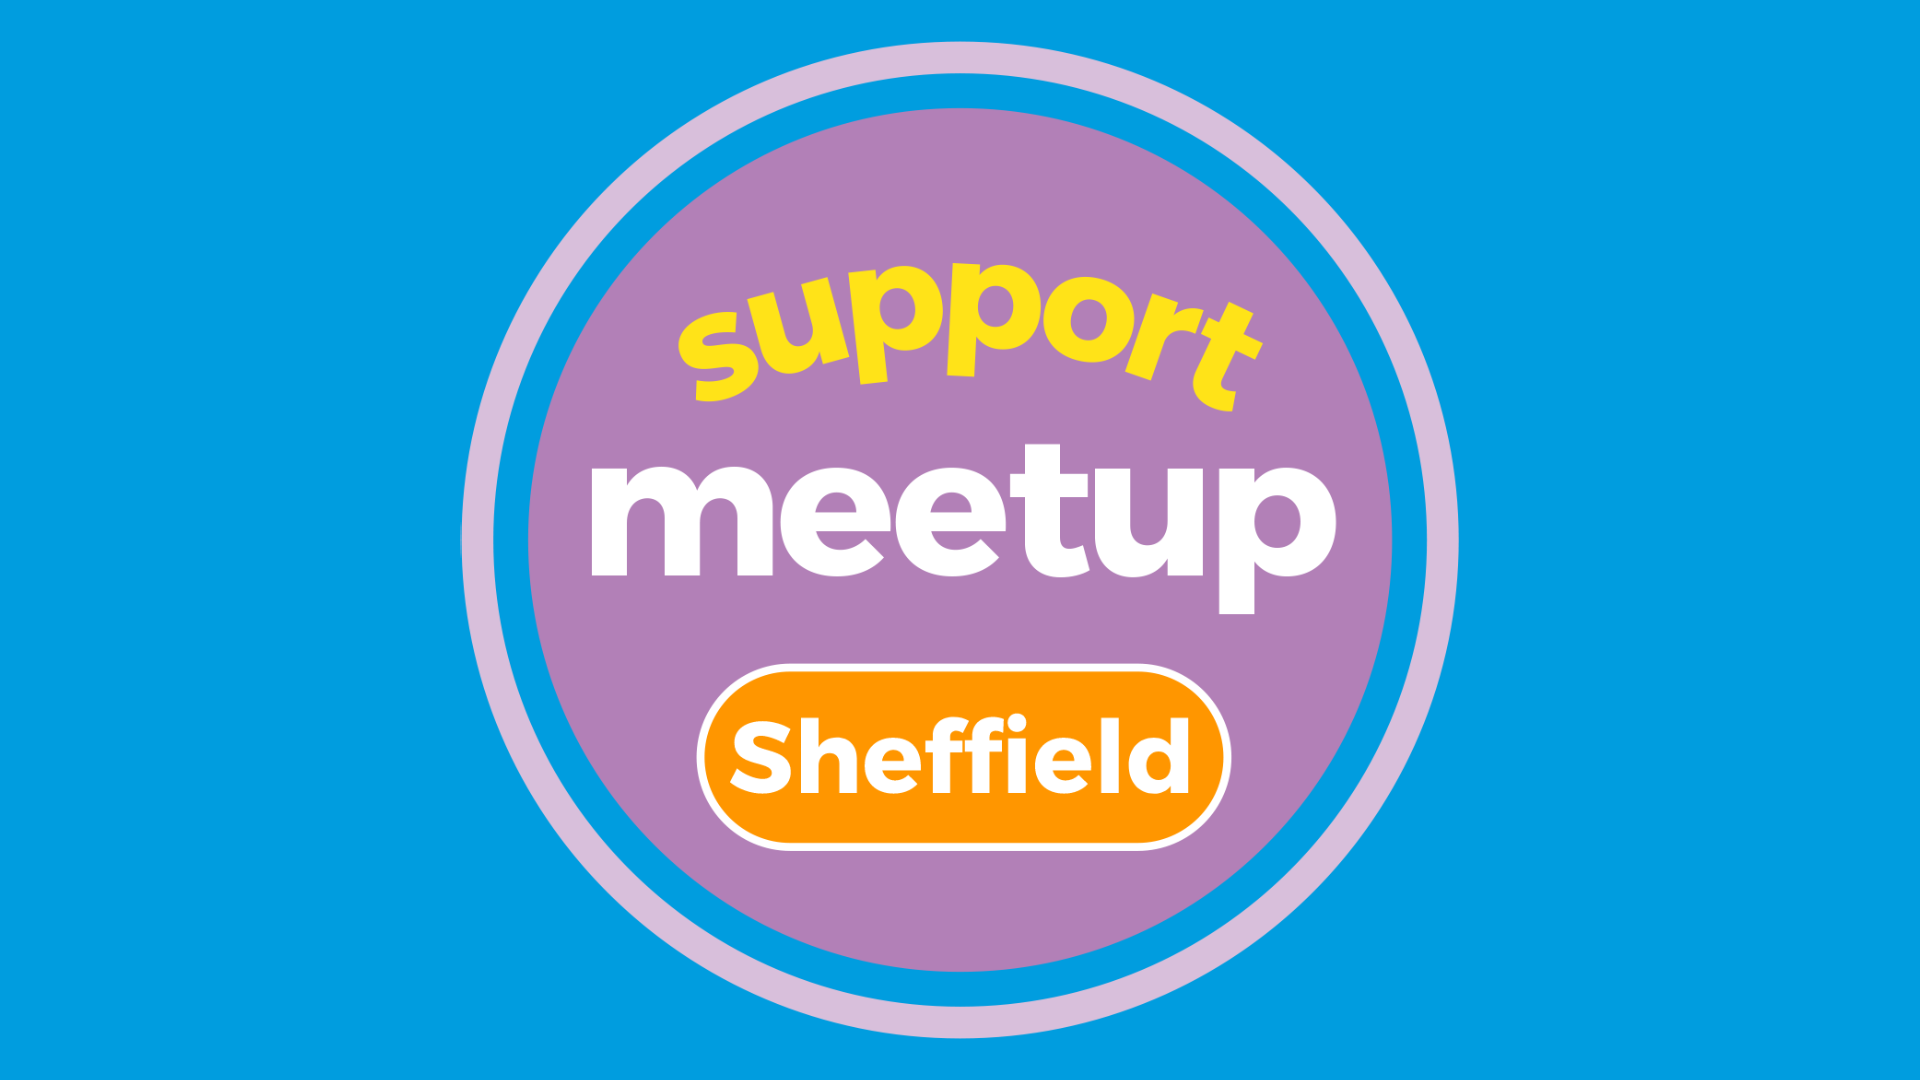 Sheffield Support Meetup